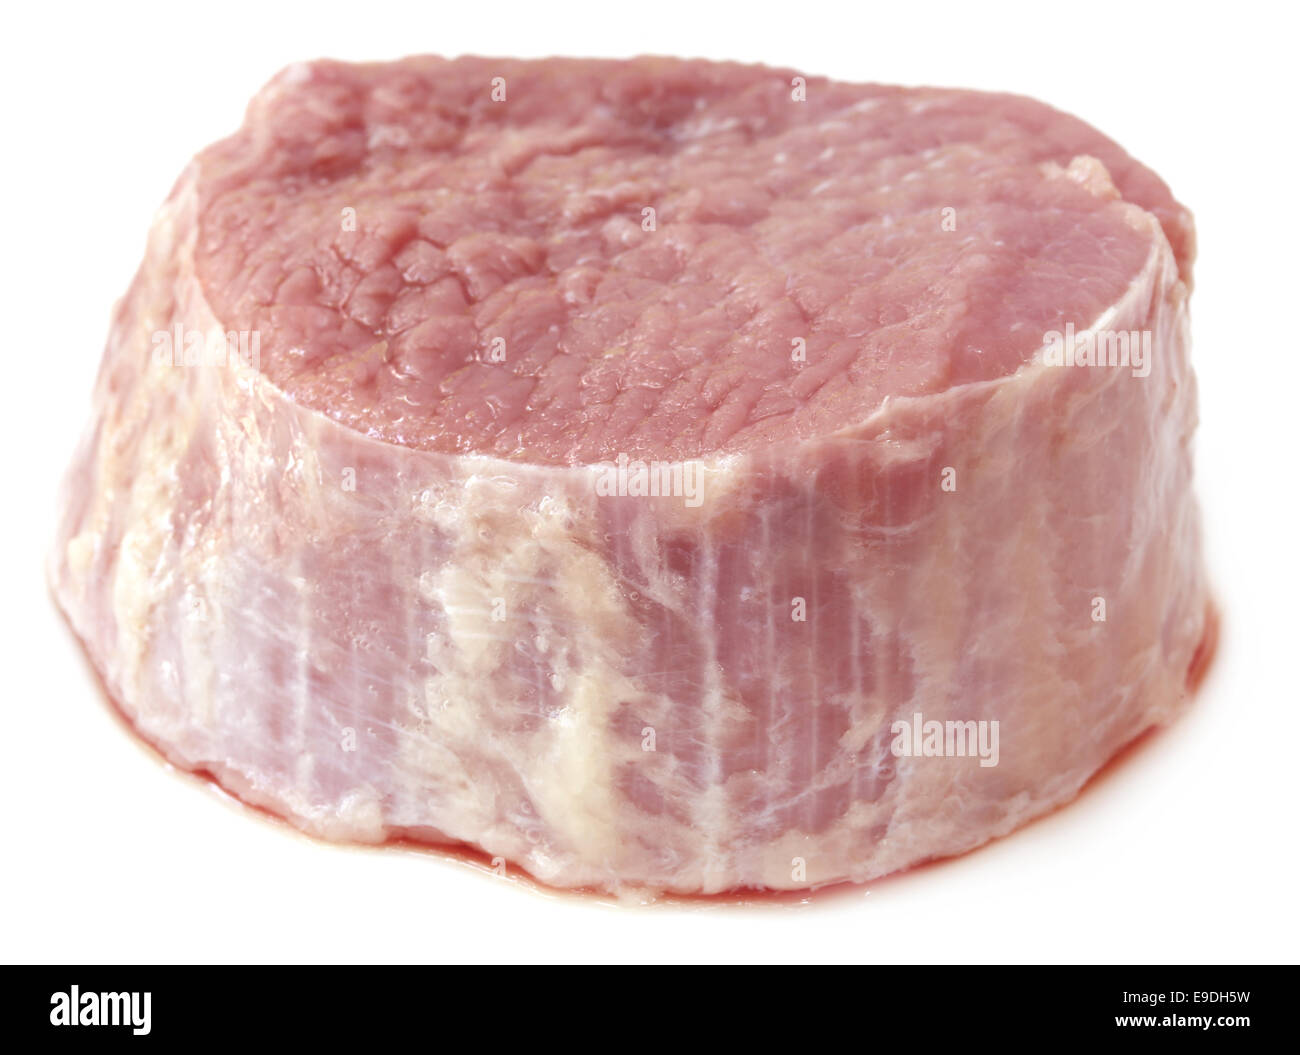 Gehacktes Rindfleisch auf weißem Hintergrund Stockfoto